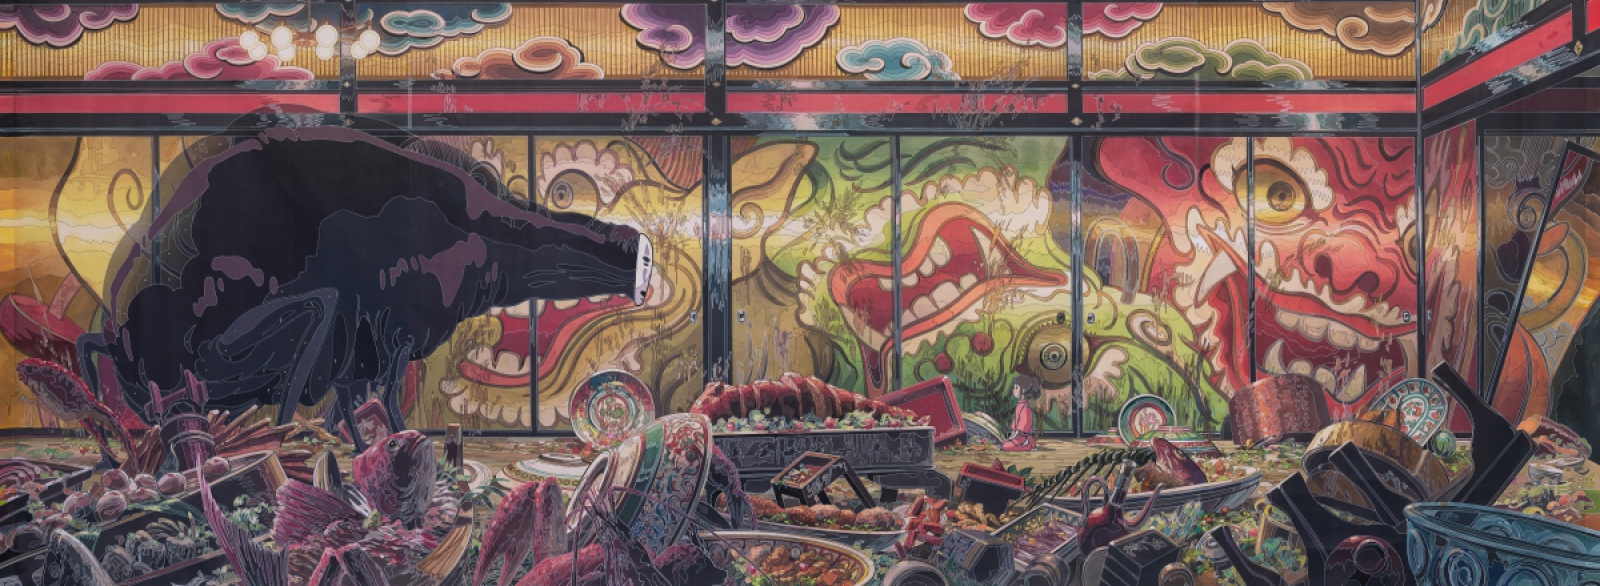 Carton de tissage Le Banquet du Sans Visage tirée du film Le Voyage de Chihiro © 2001 Studio Ghibli – NDDTM